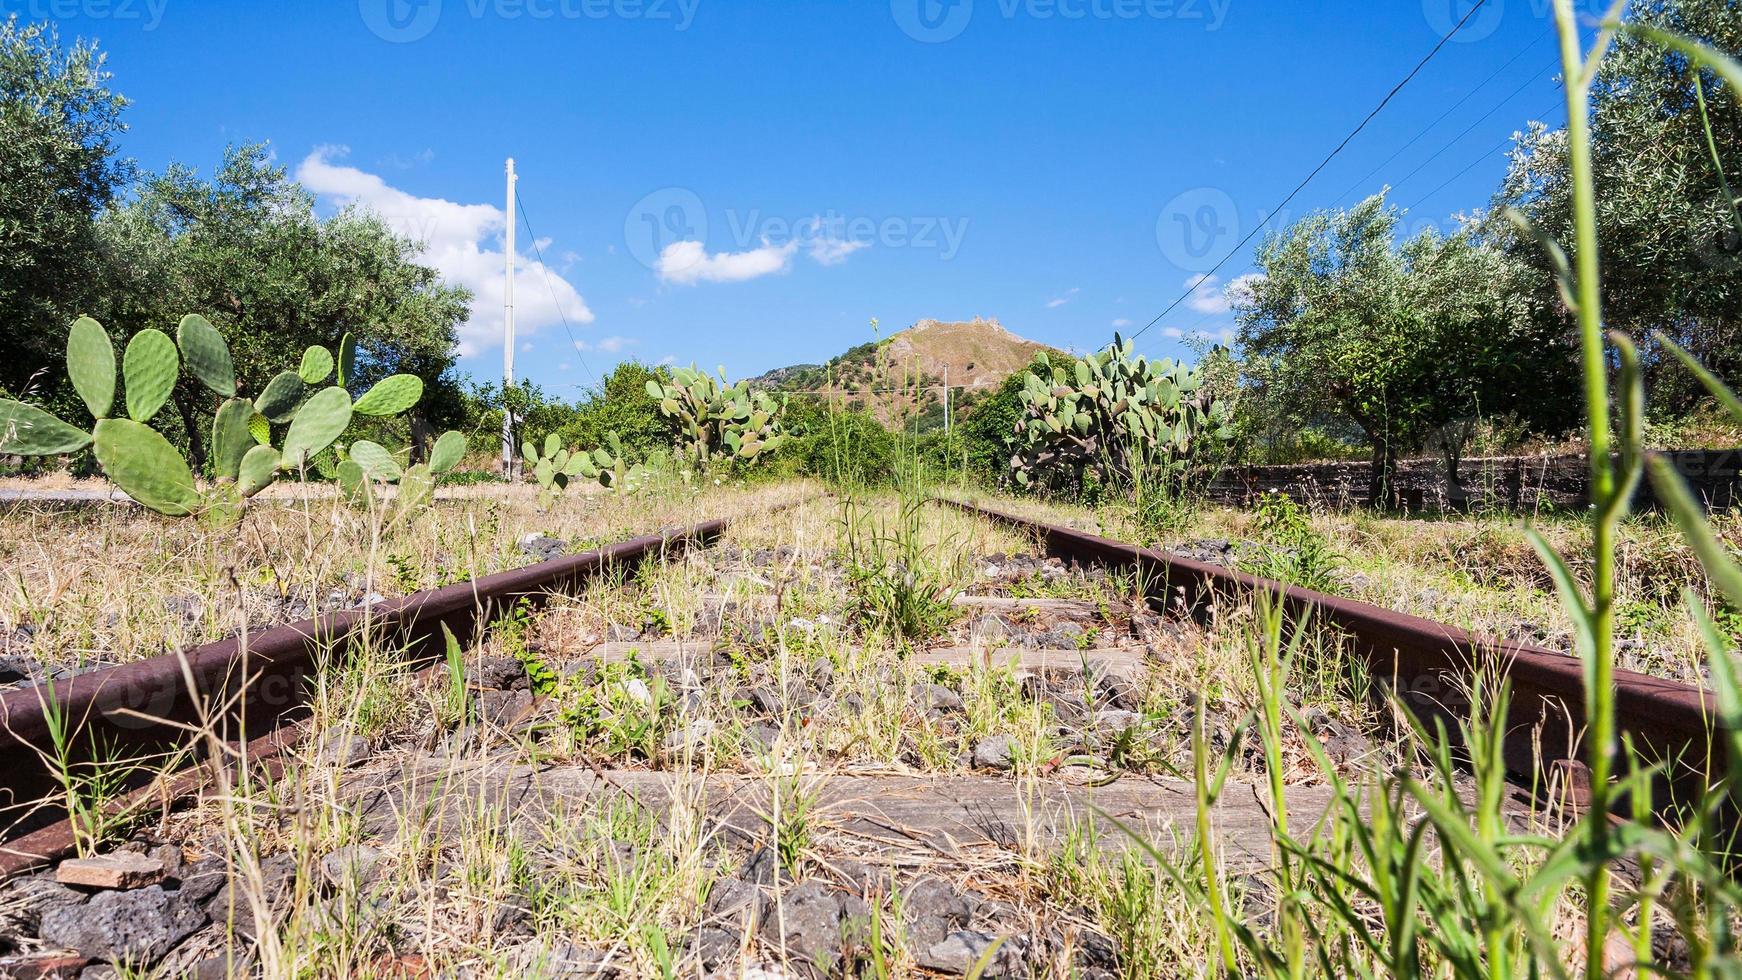 ferrocarril rural abandonado en sicilia foto